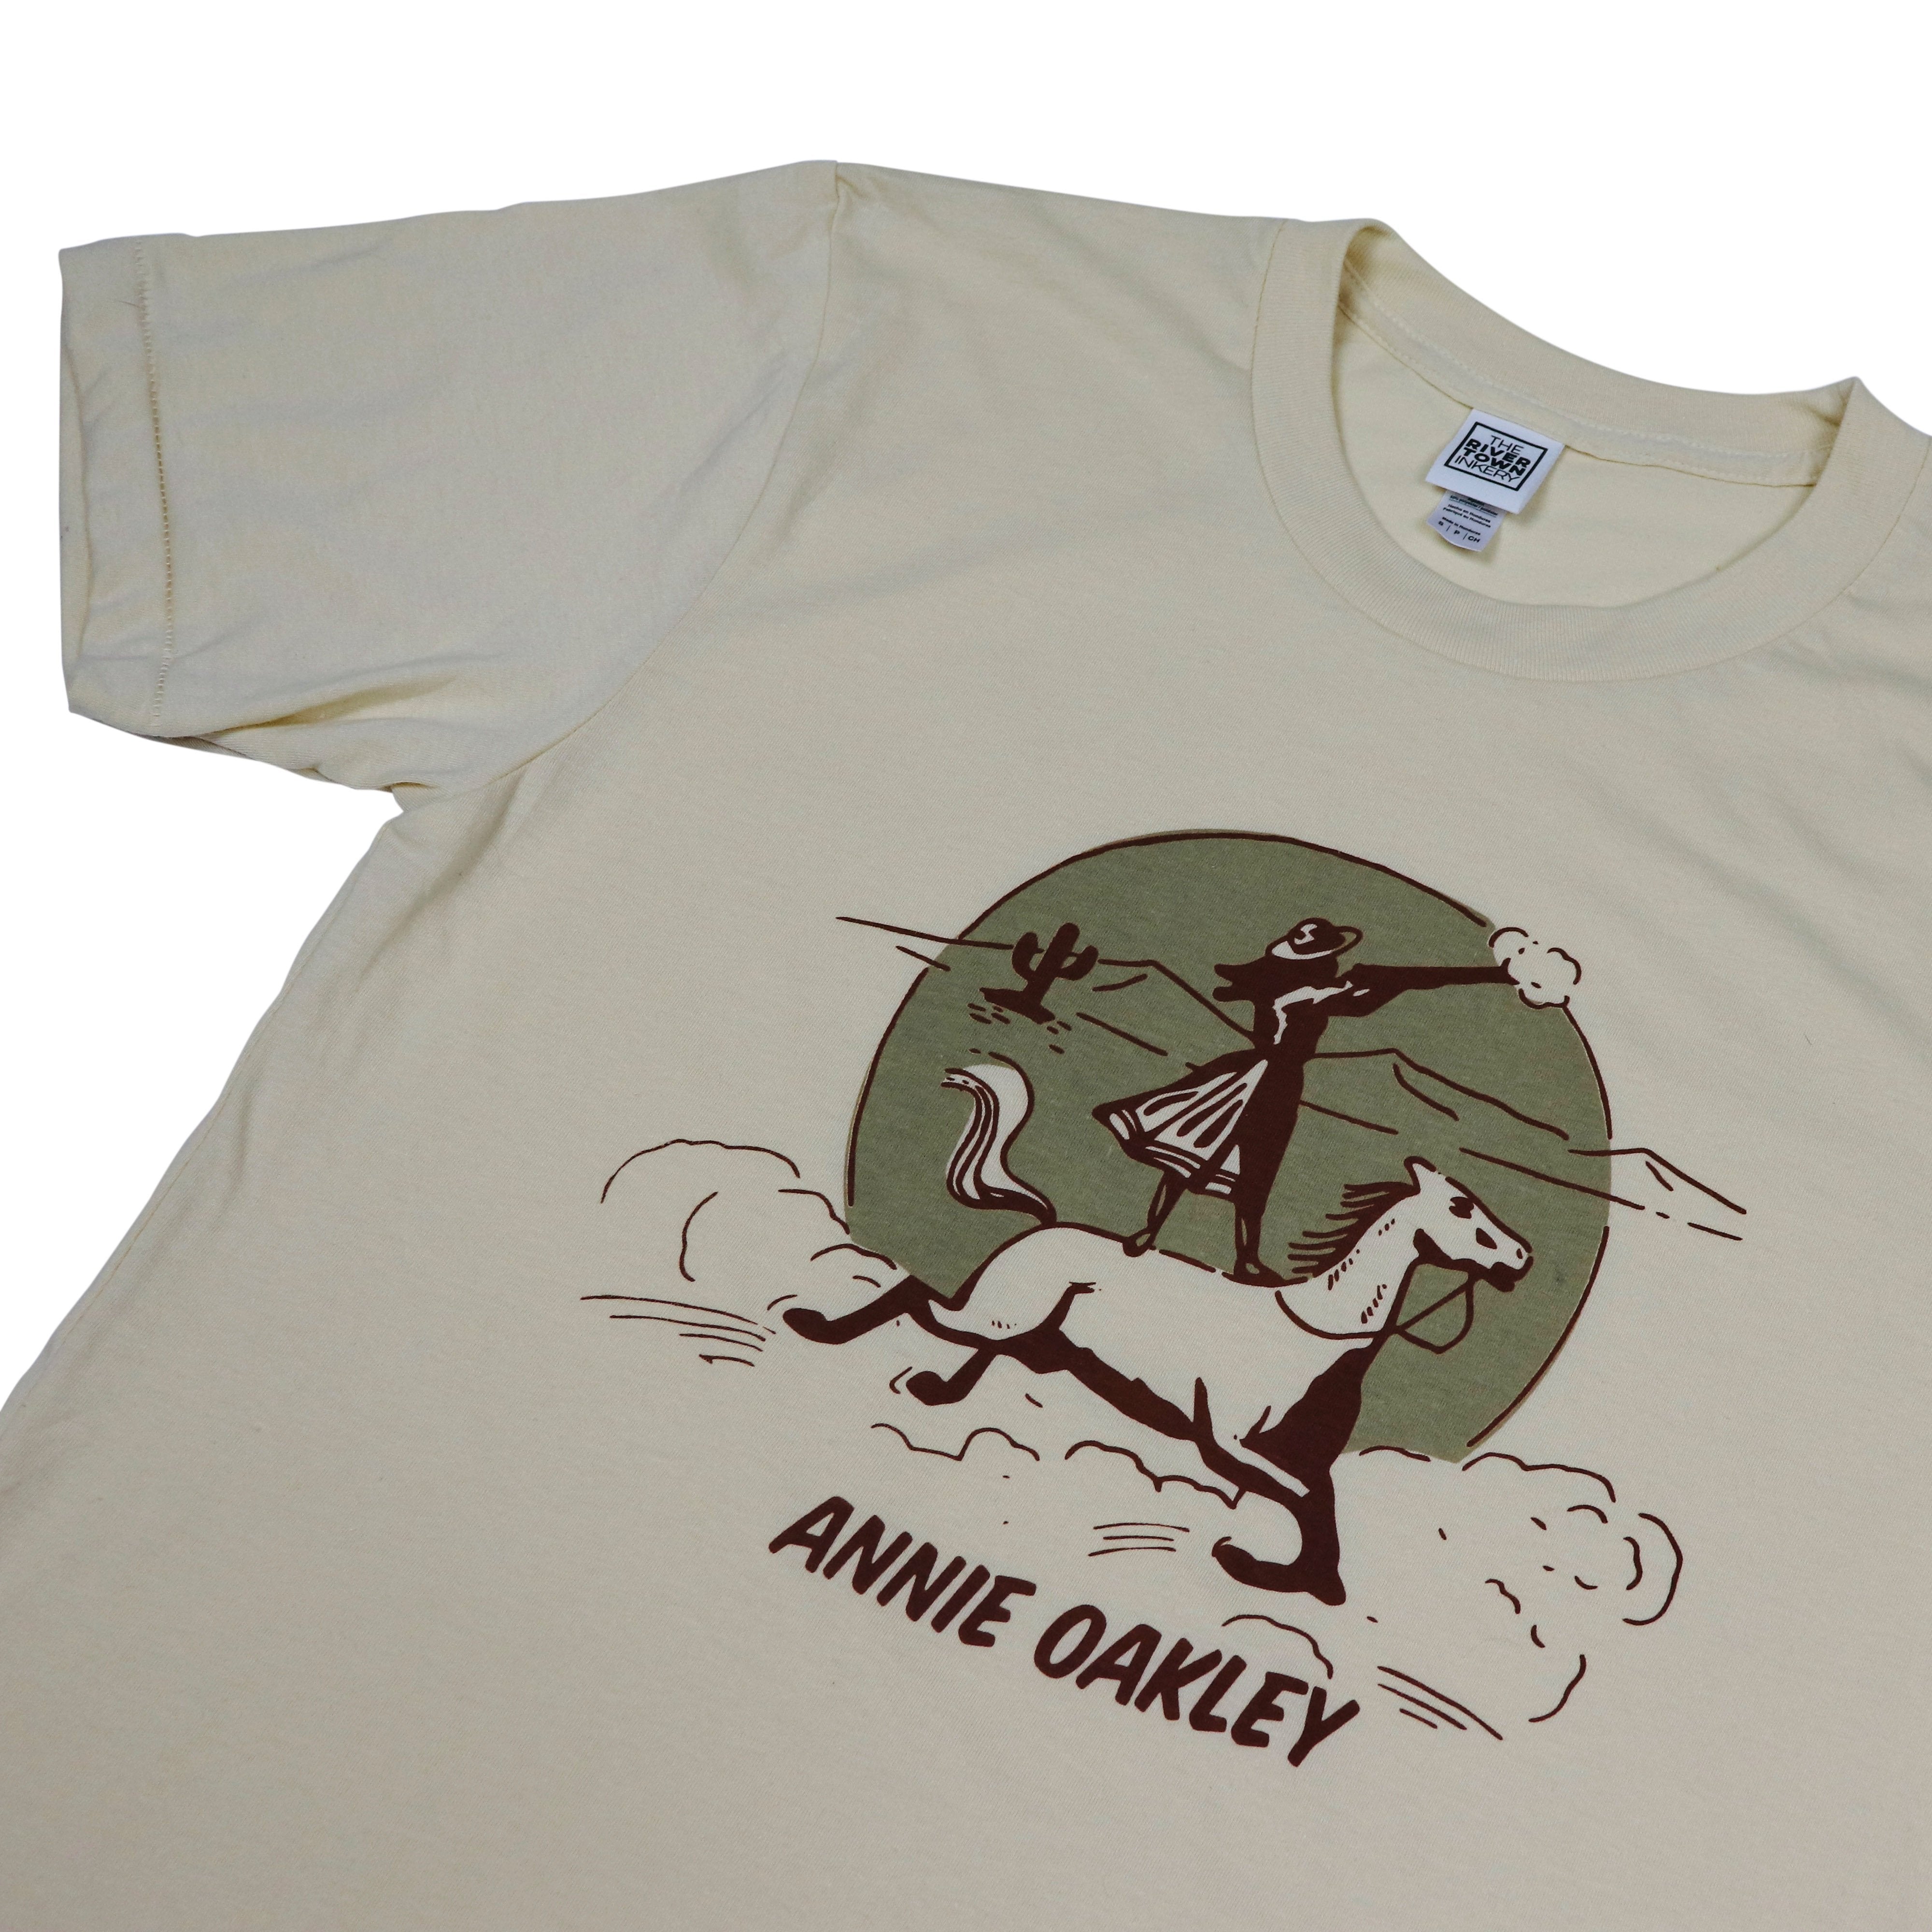 Annie Oakley Vintage Tee - Cincinnati Mens & Womens Shirt – Rivertown  Inkery & Apparel